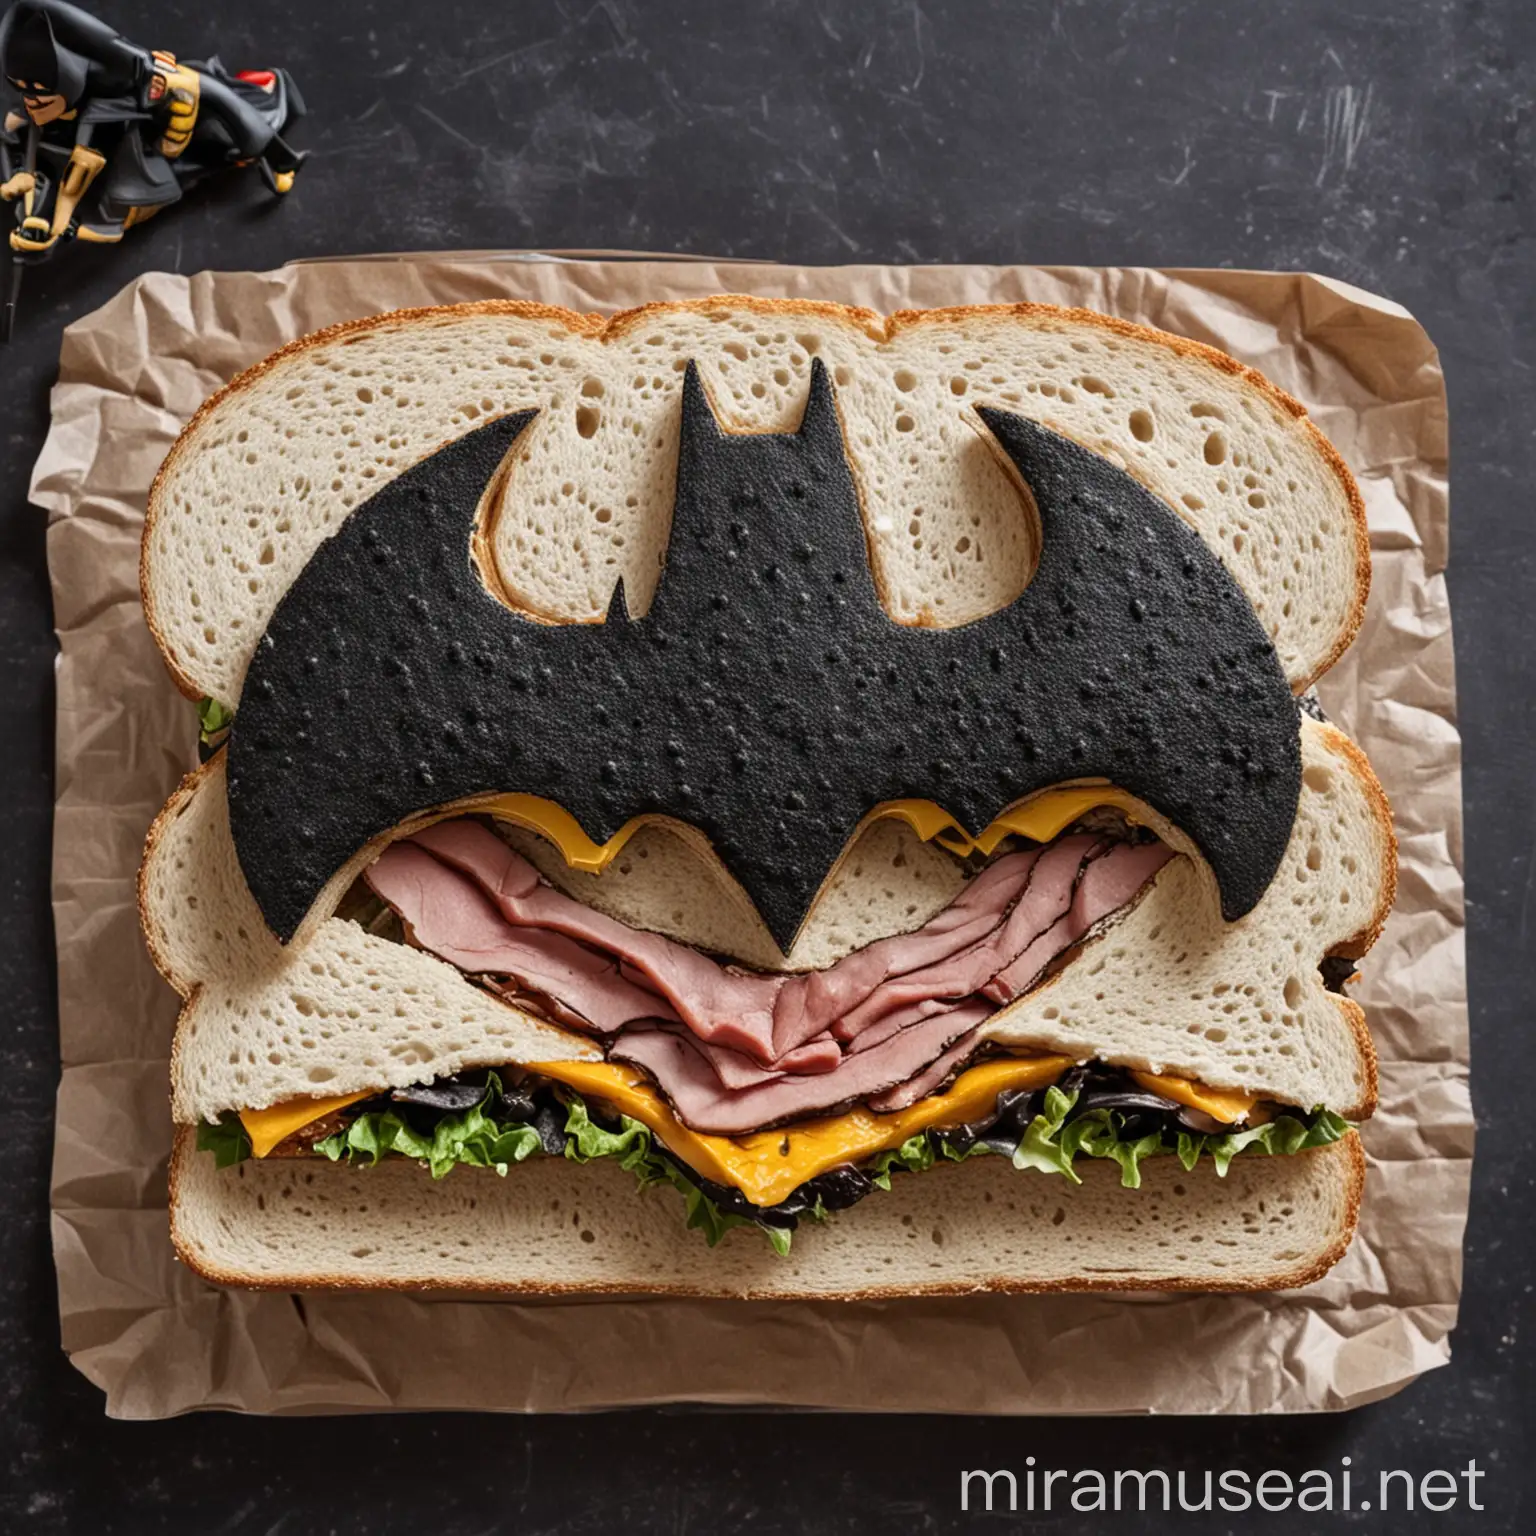 Batman sandwich